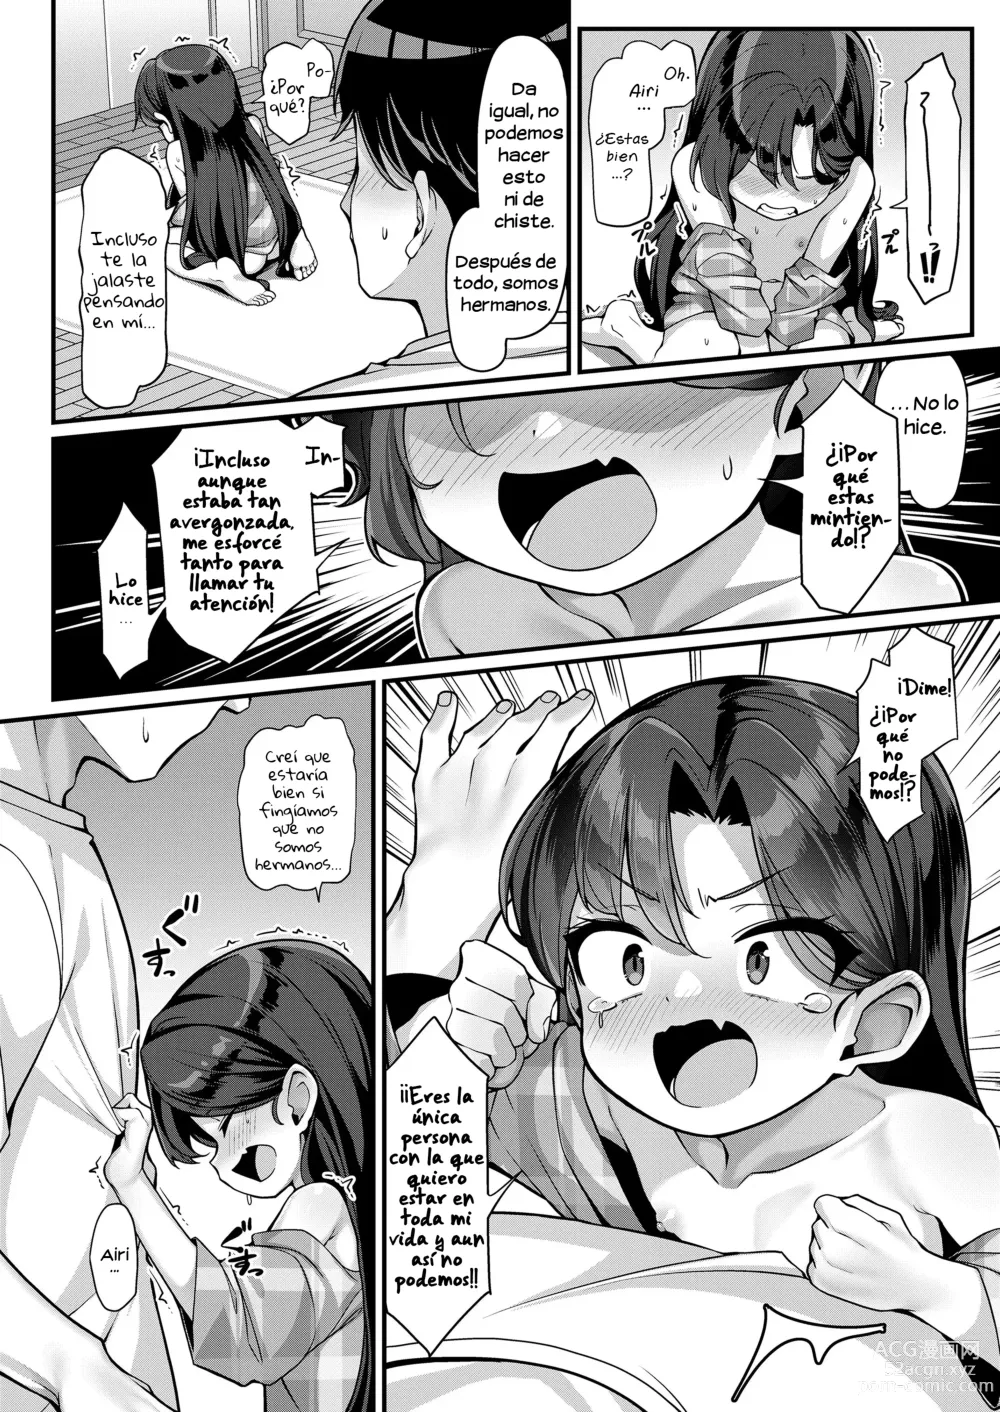 Page 8 of doujinshi La estrategía de seducción de Airi